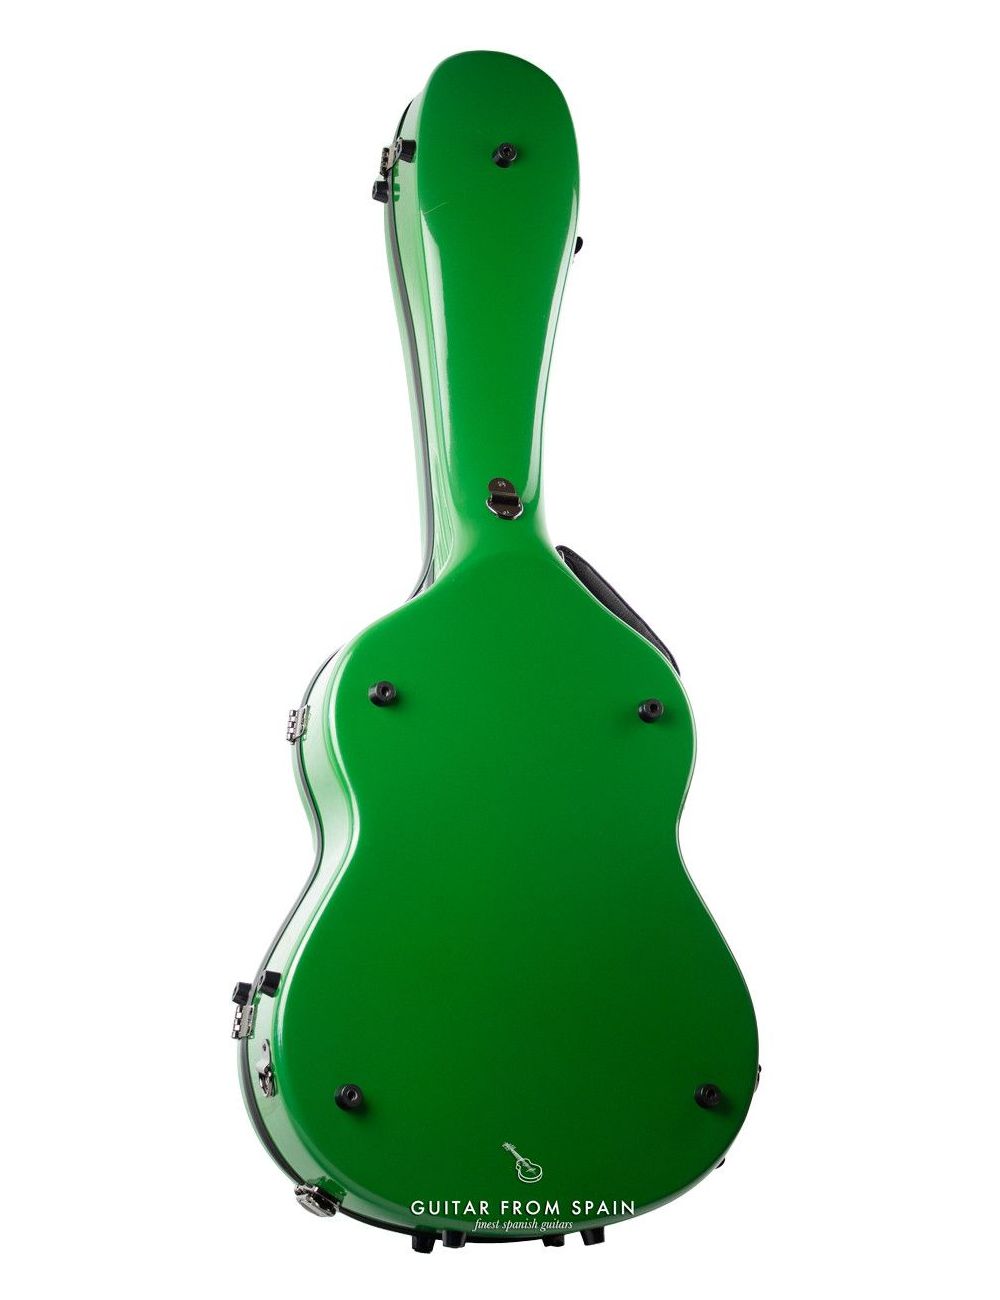 Cibeles C200.008FG-V Estuche de guitarra clásica con higrómetro